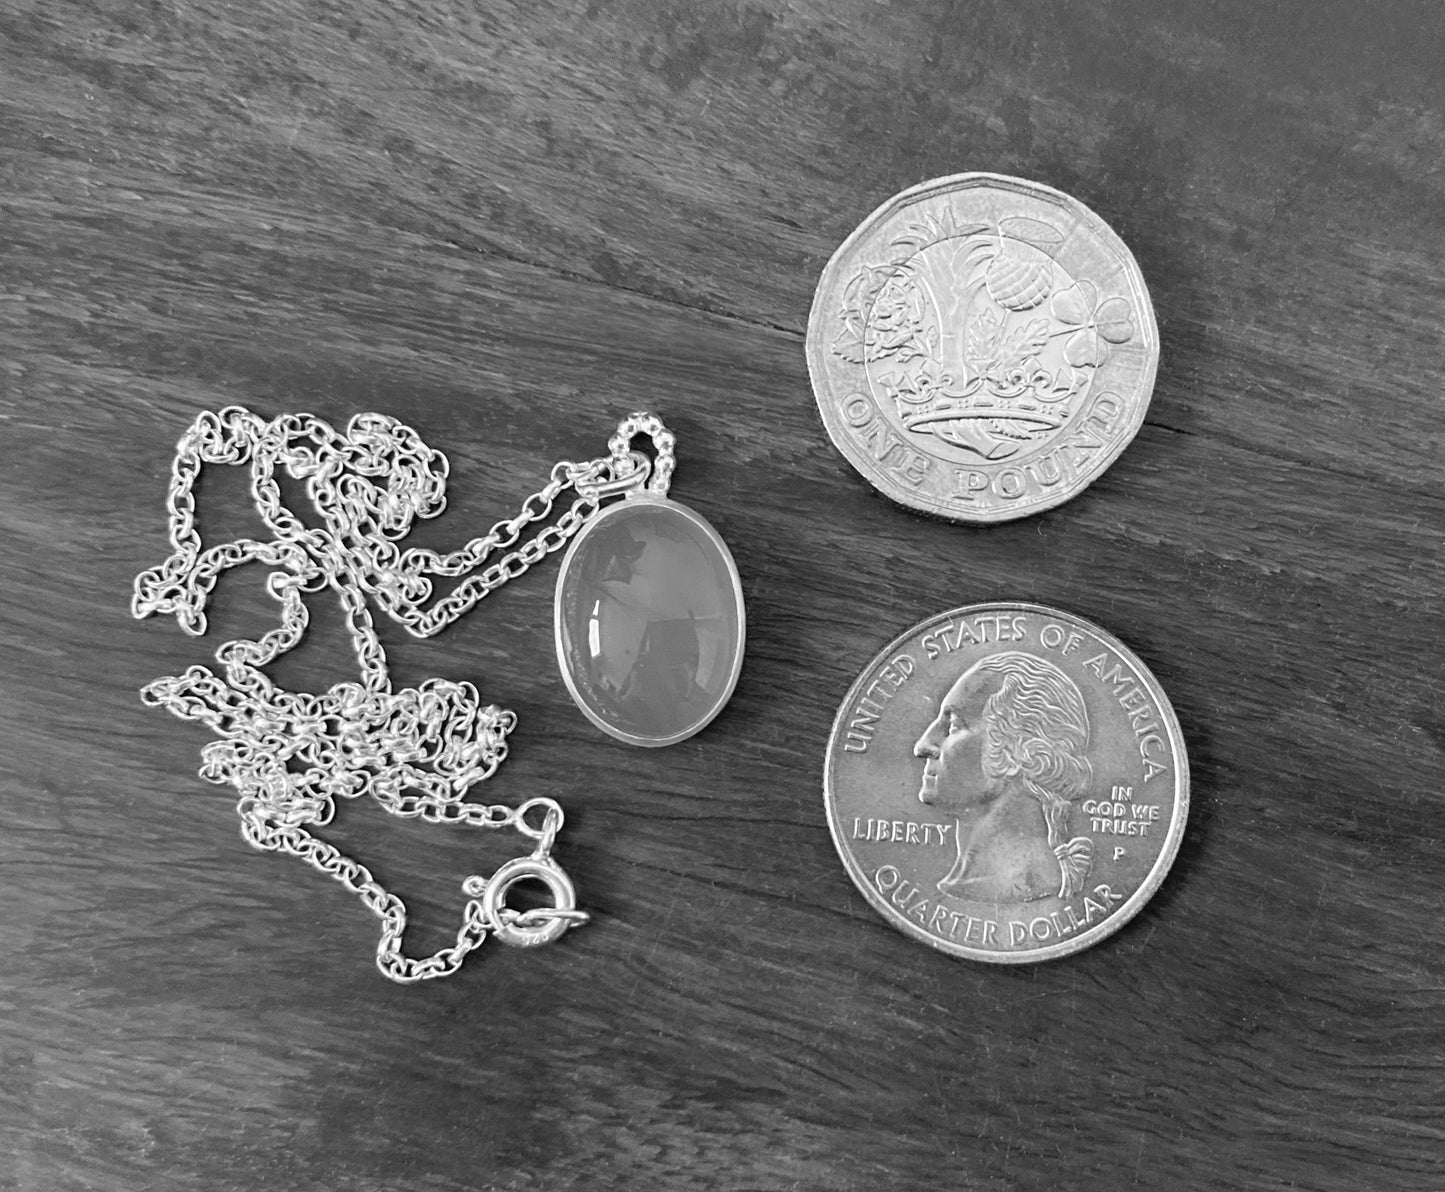 7.9ct Carnelian Necklace in Sterling Silver, Oval Carnelian Neklace